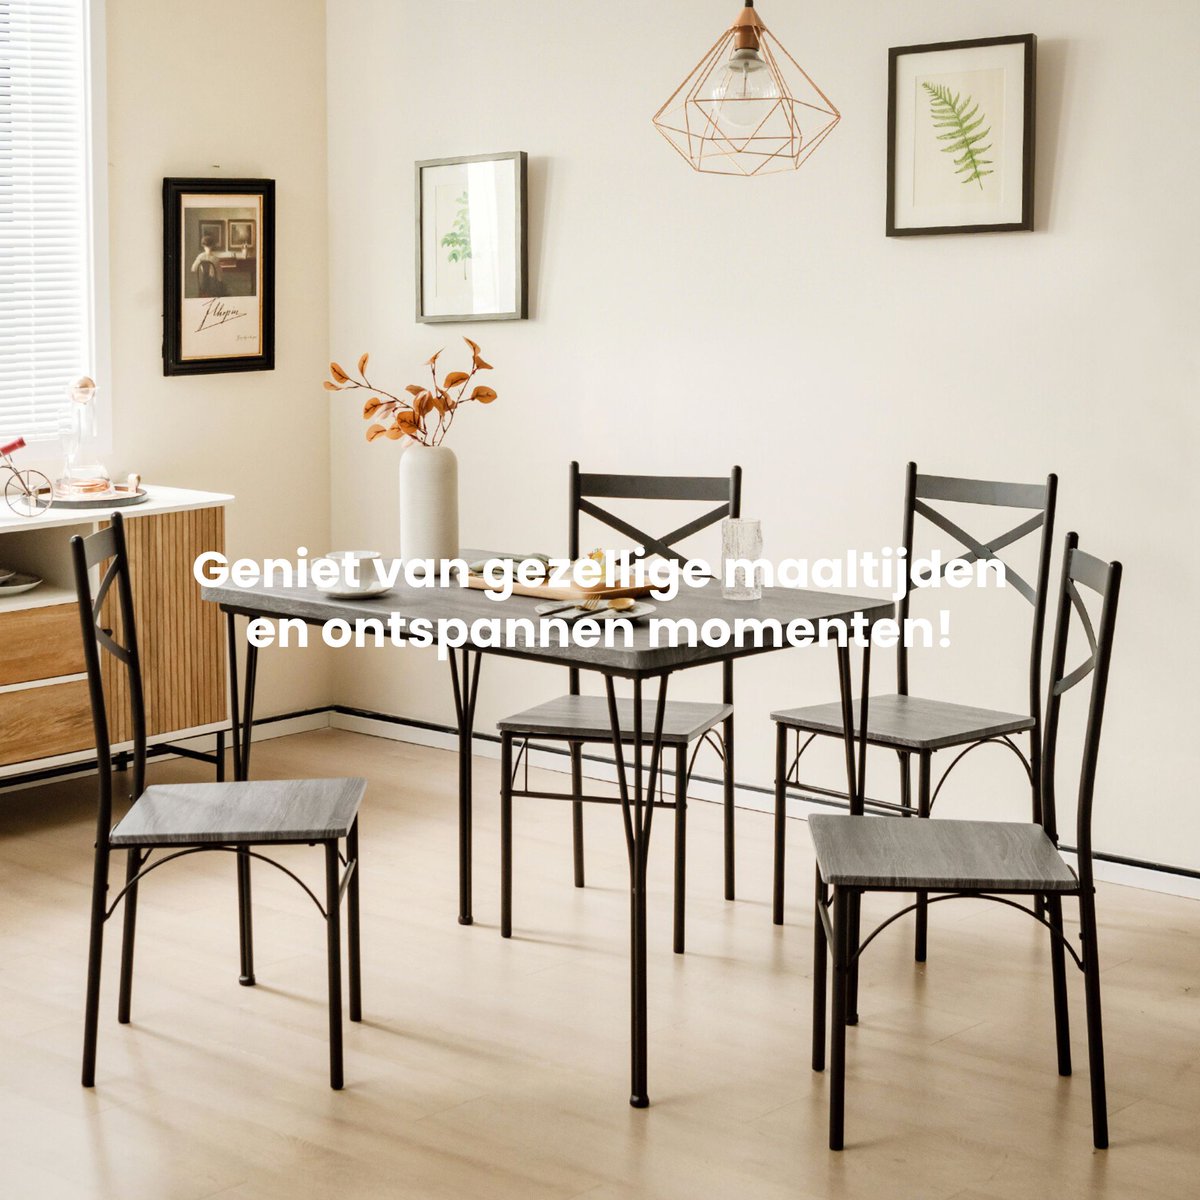 🌟Deze prachtige set bestaat uit een rechthoekige tafel en 4 stoelen, perfect voor gezellige familiediners en bijeenkomsten met vrienden. 

Geniet van gezellige maaltijden en ontspannen momenten met onze hoogwaardige eettafelset. 🍽️

#Thuisdecoratie #thuis #interior #interieur